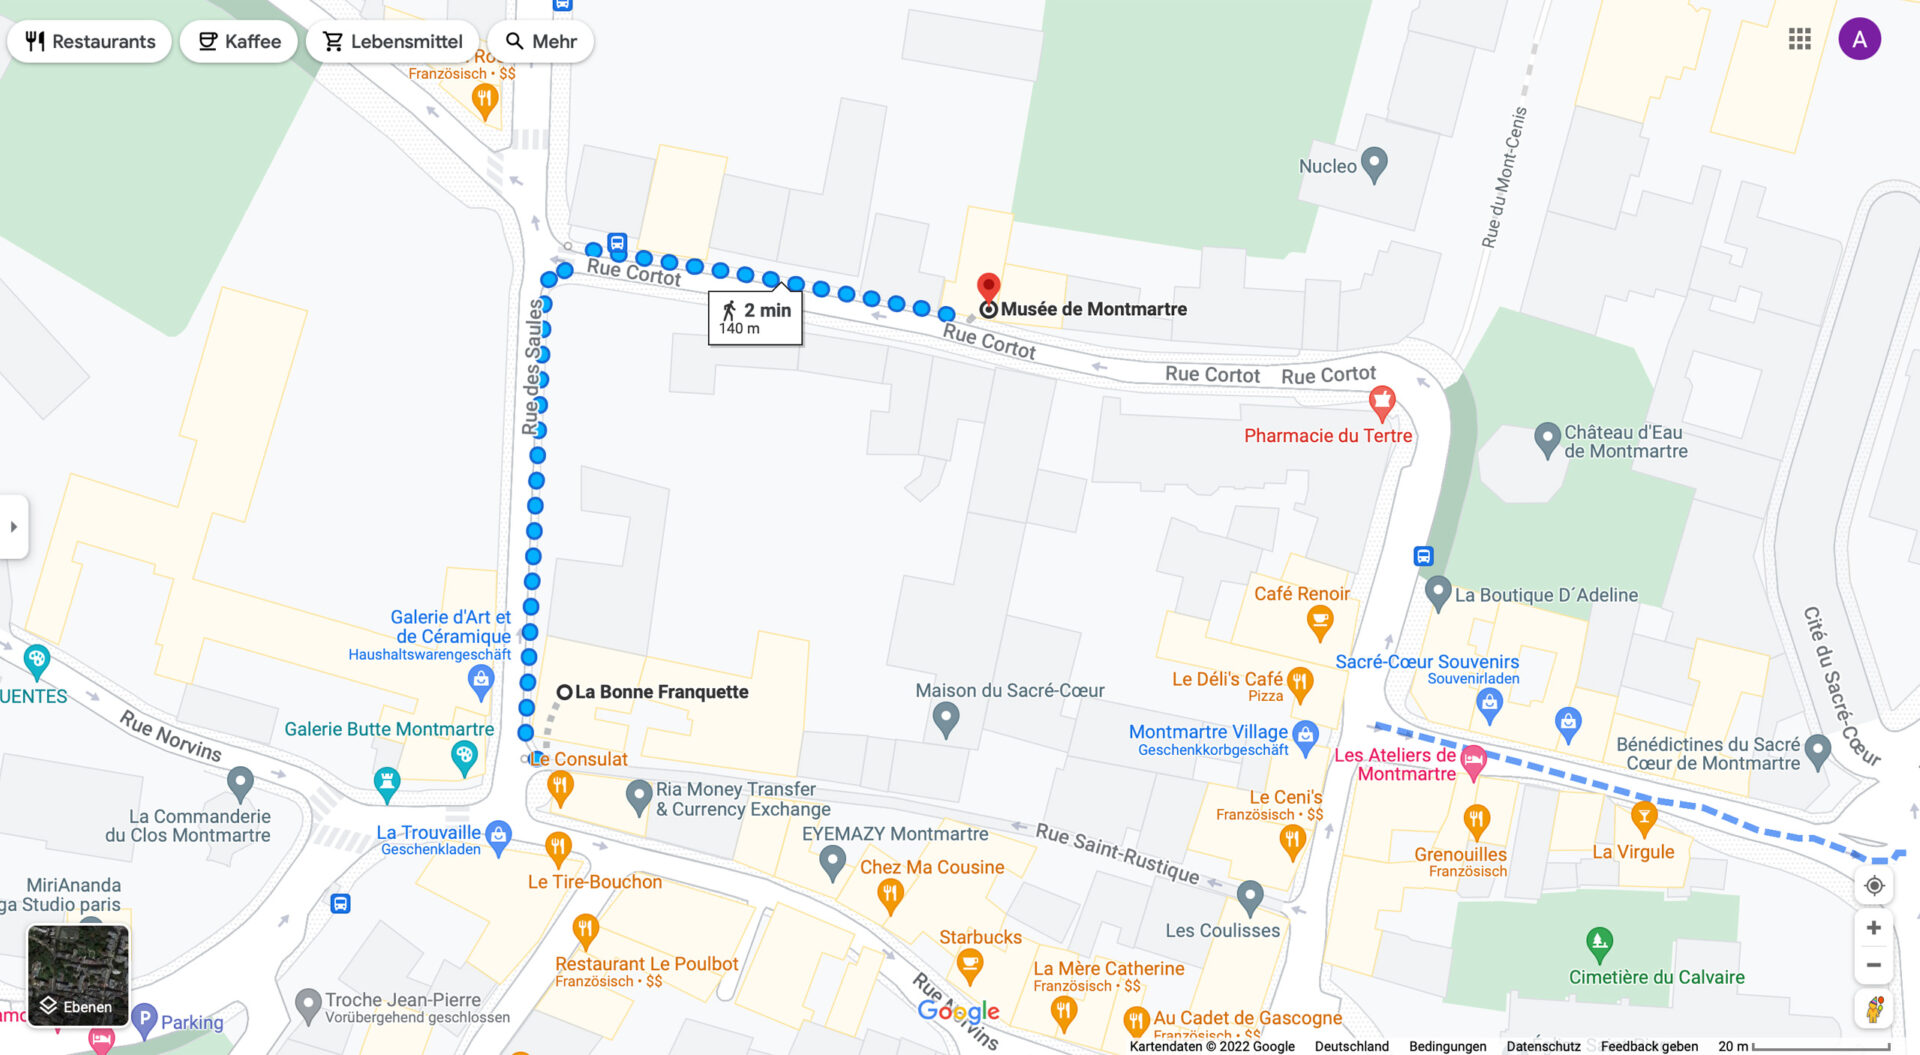 Fußweg von der Ecke Rue des Saules und Rue Saint-Rustique zum Musée de Montmartre, Paris, Frankreich, 2022